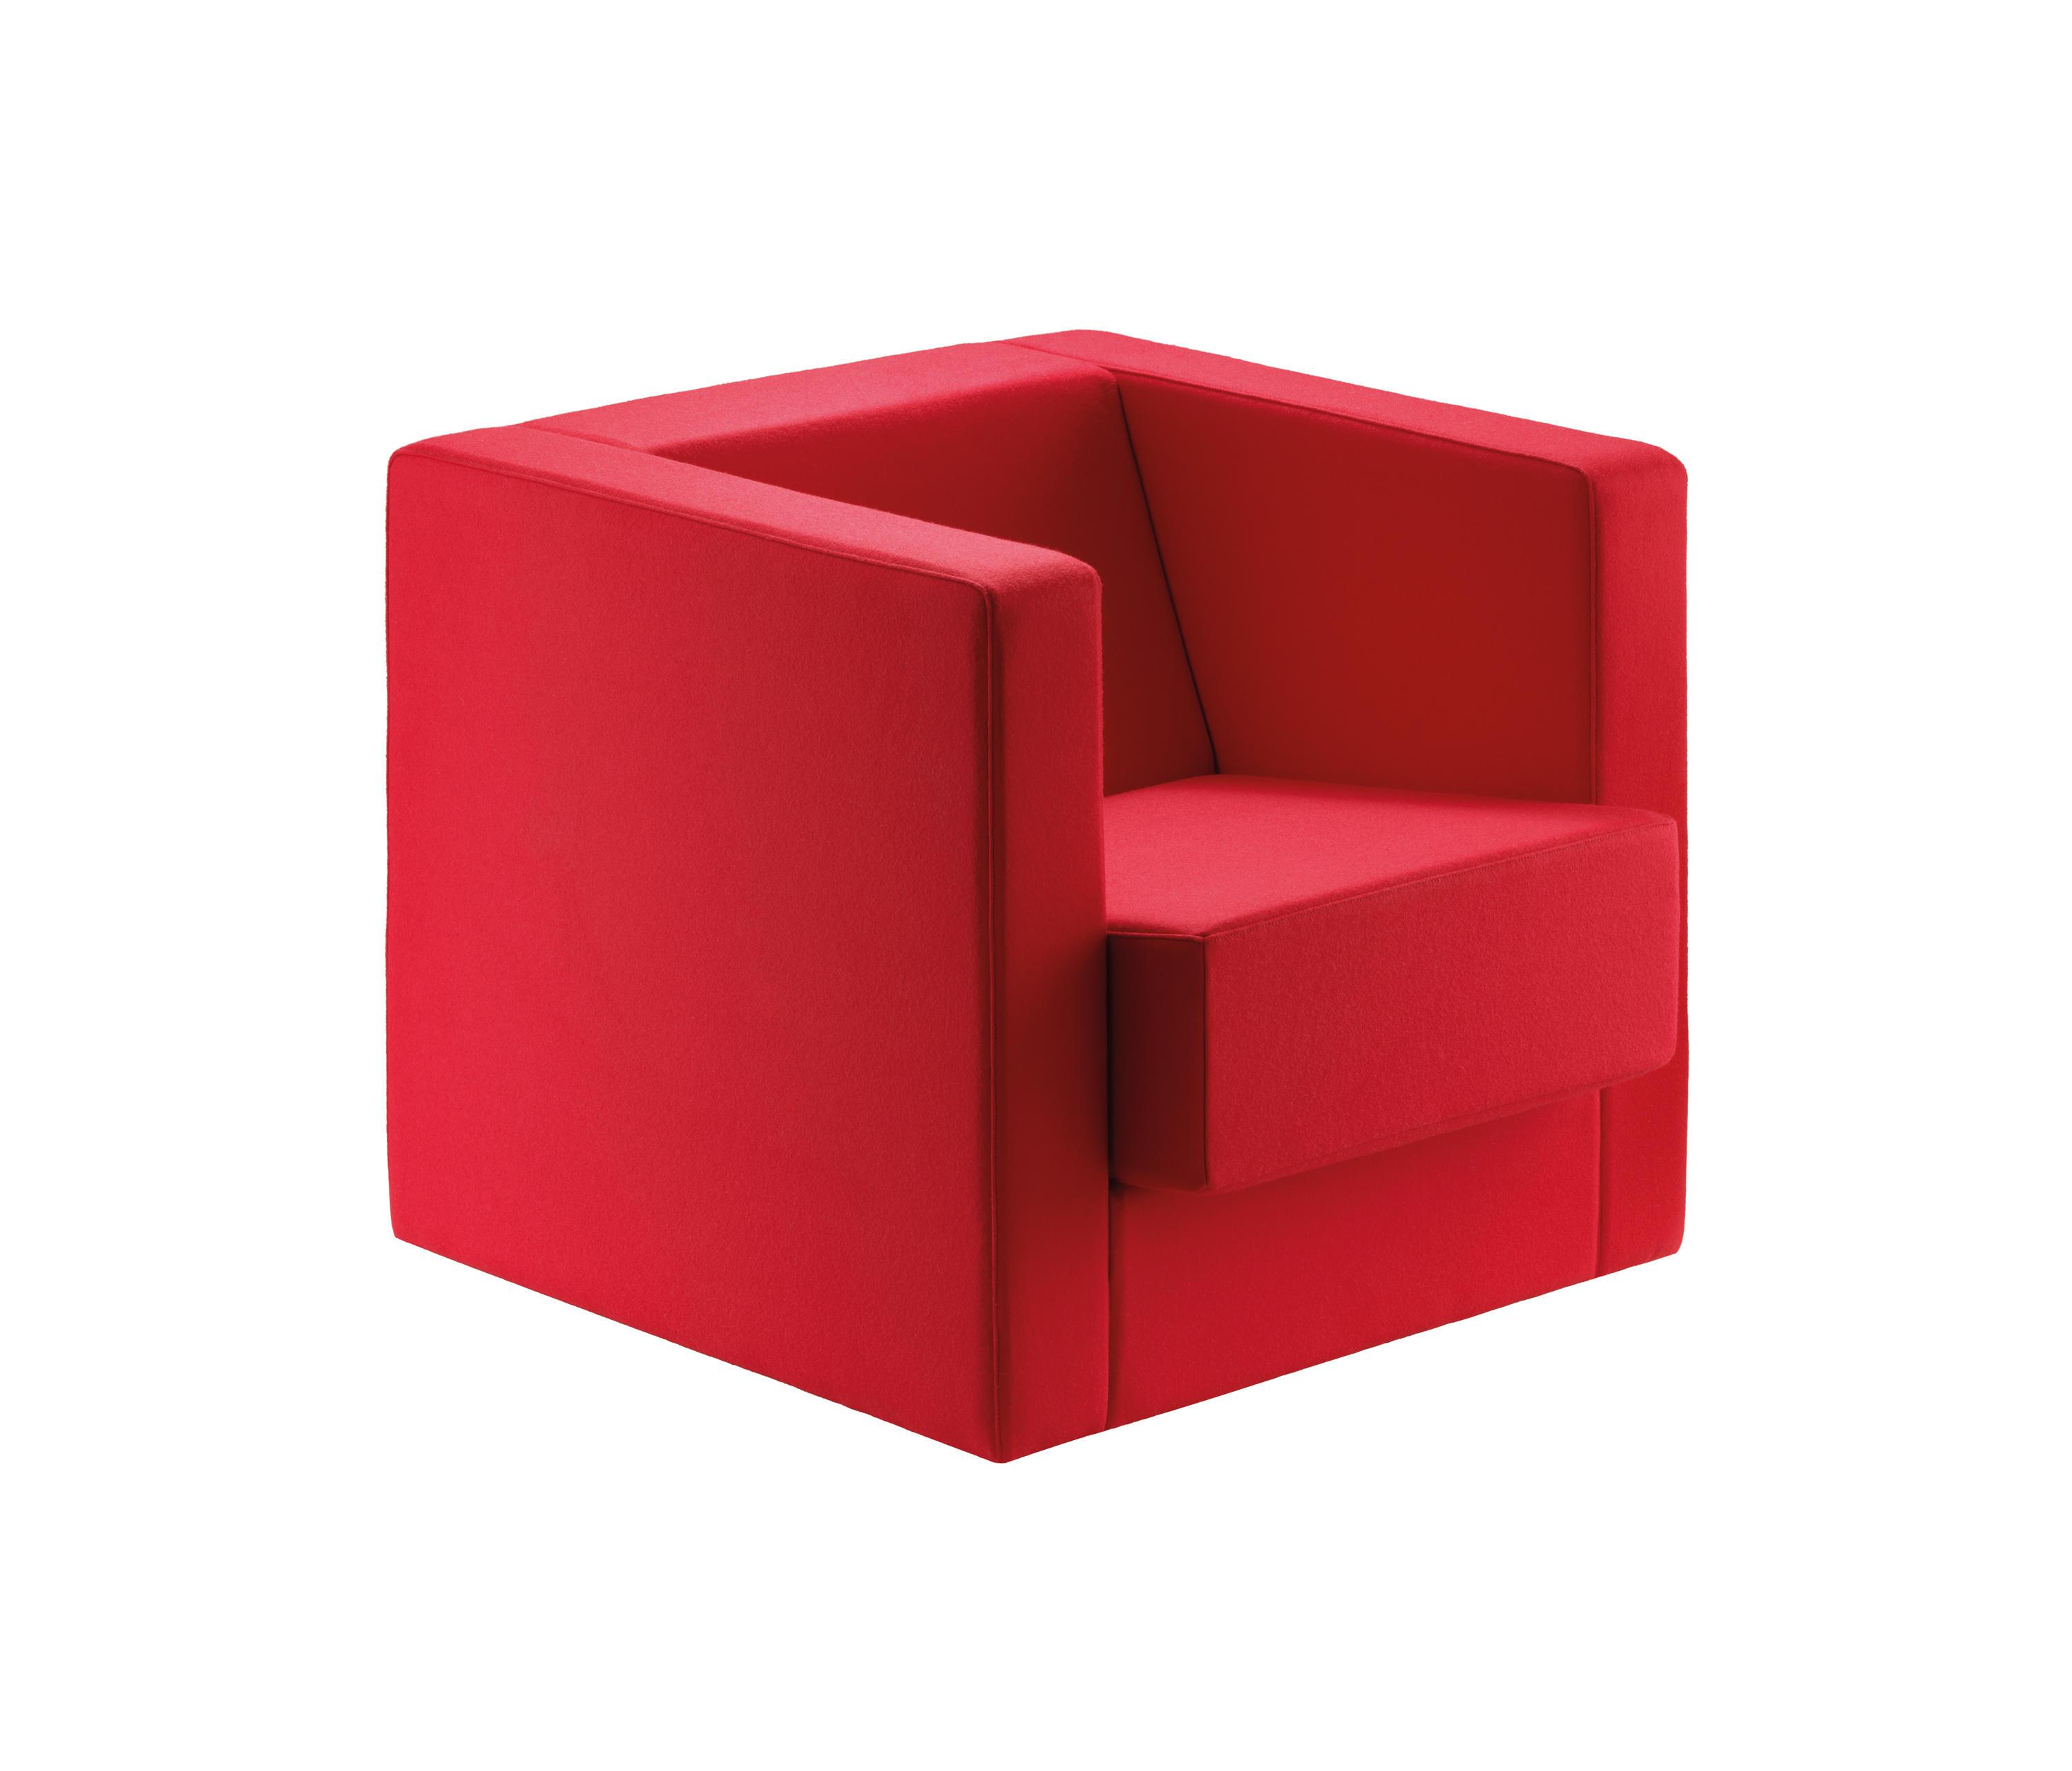 Красный 1 куб. Кресло Cube Bauhaus. Кресло Баухауз Веймар. Кресло Барселона Баухауз. Красное кресло Баухауз.